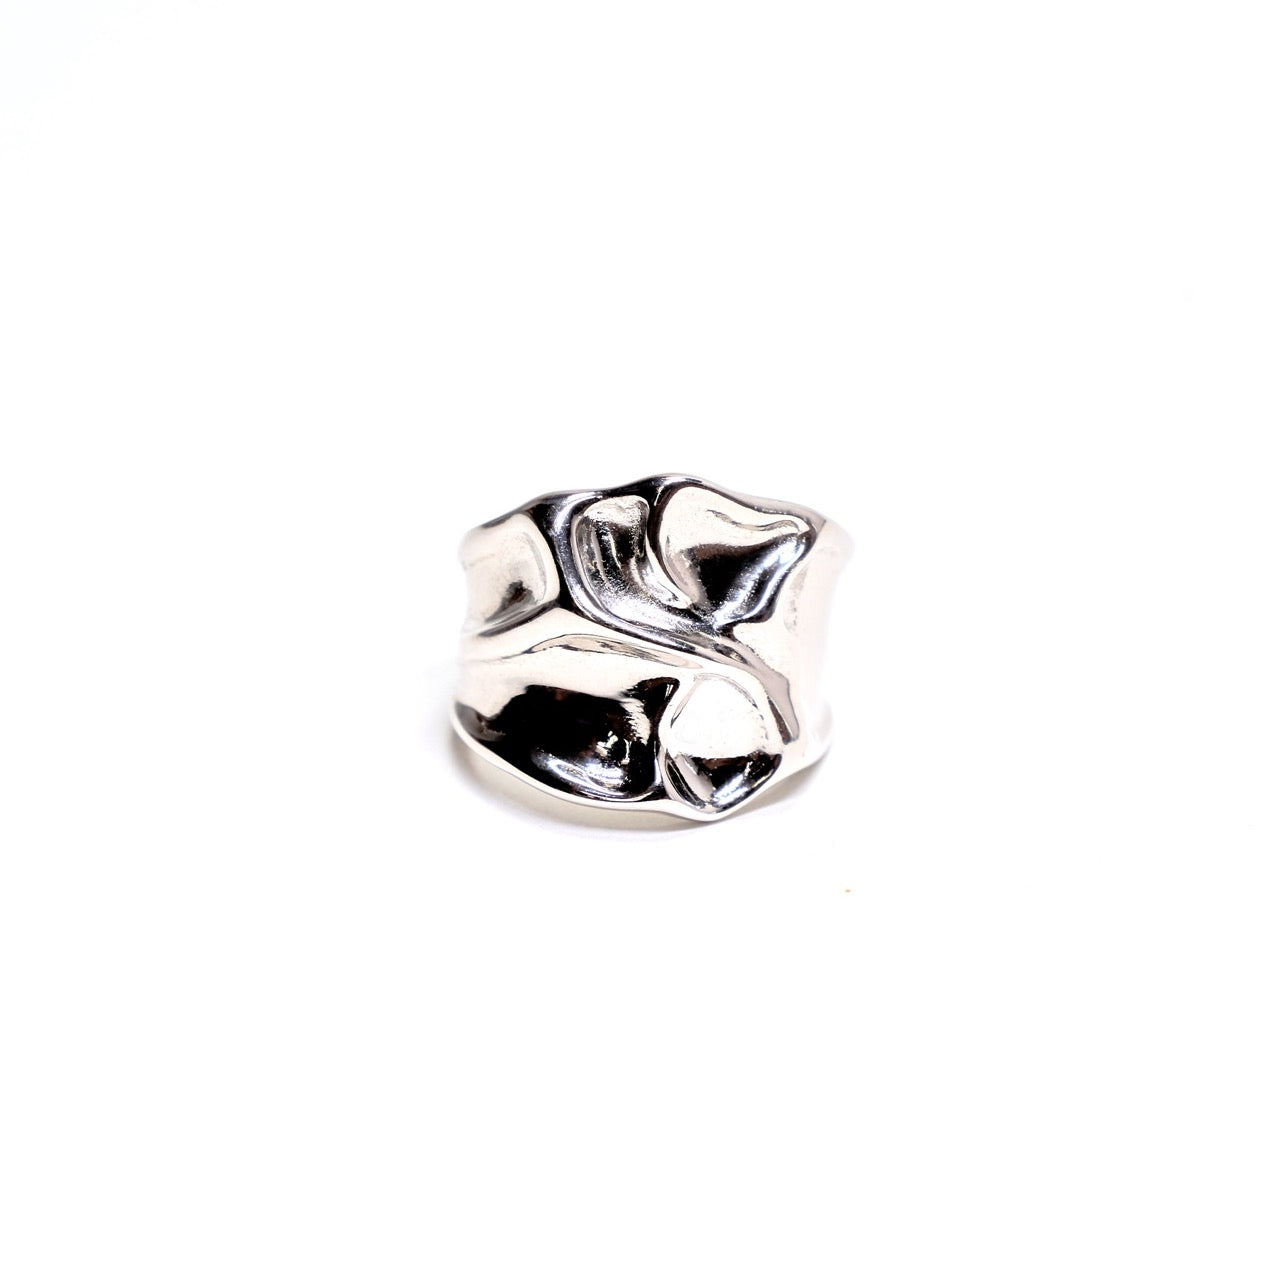 Fluid Metal Ring in Sterling Silver